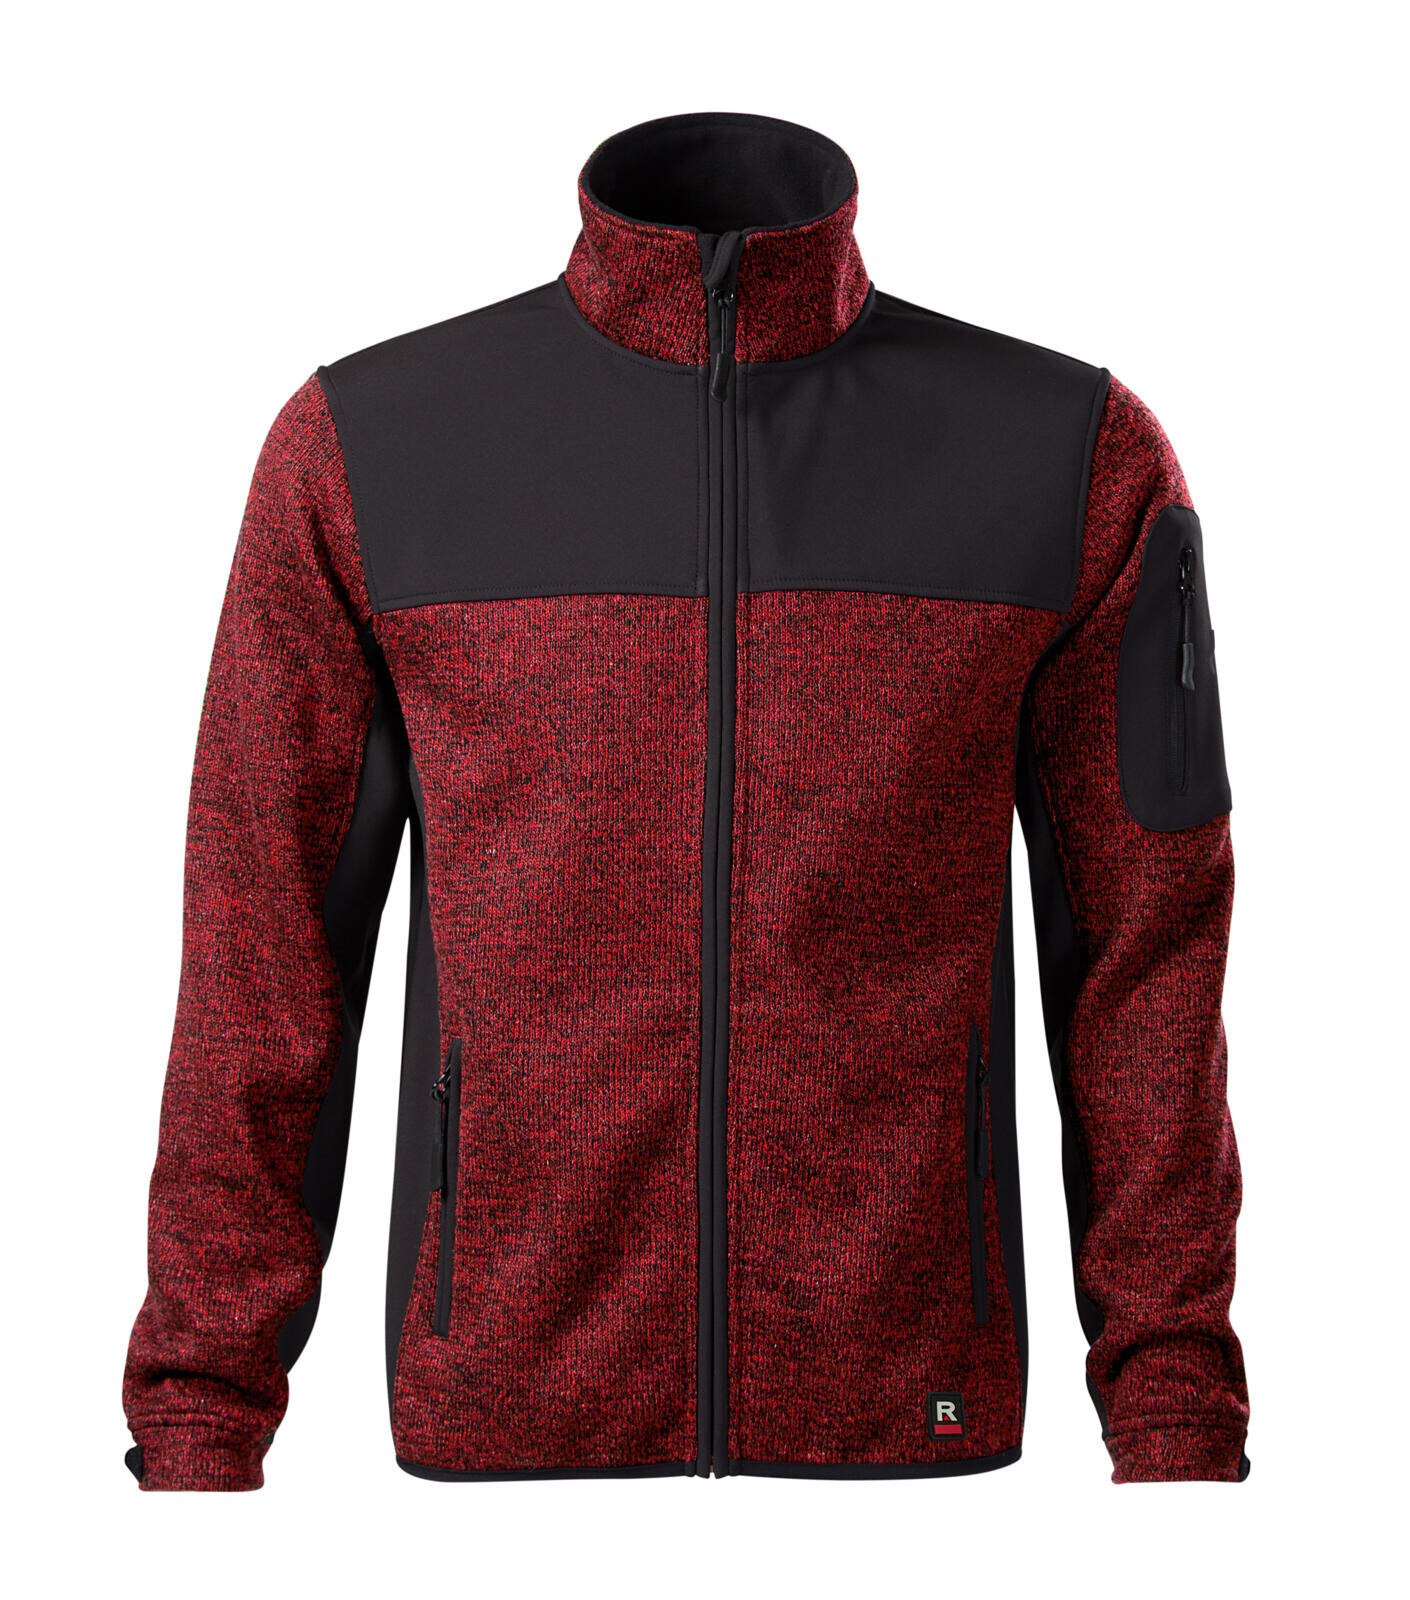 Pánska softshellová bunda Rimeck Casual 550 - veľkosť: L, farba: knit marlboro červená